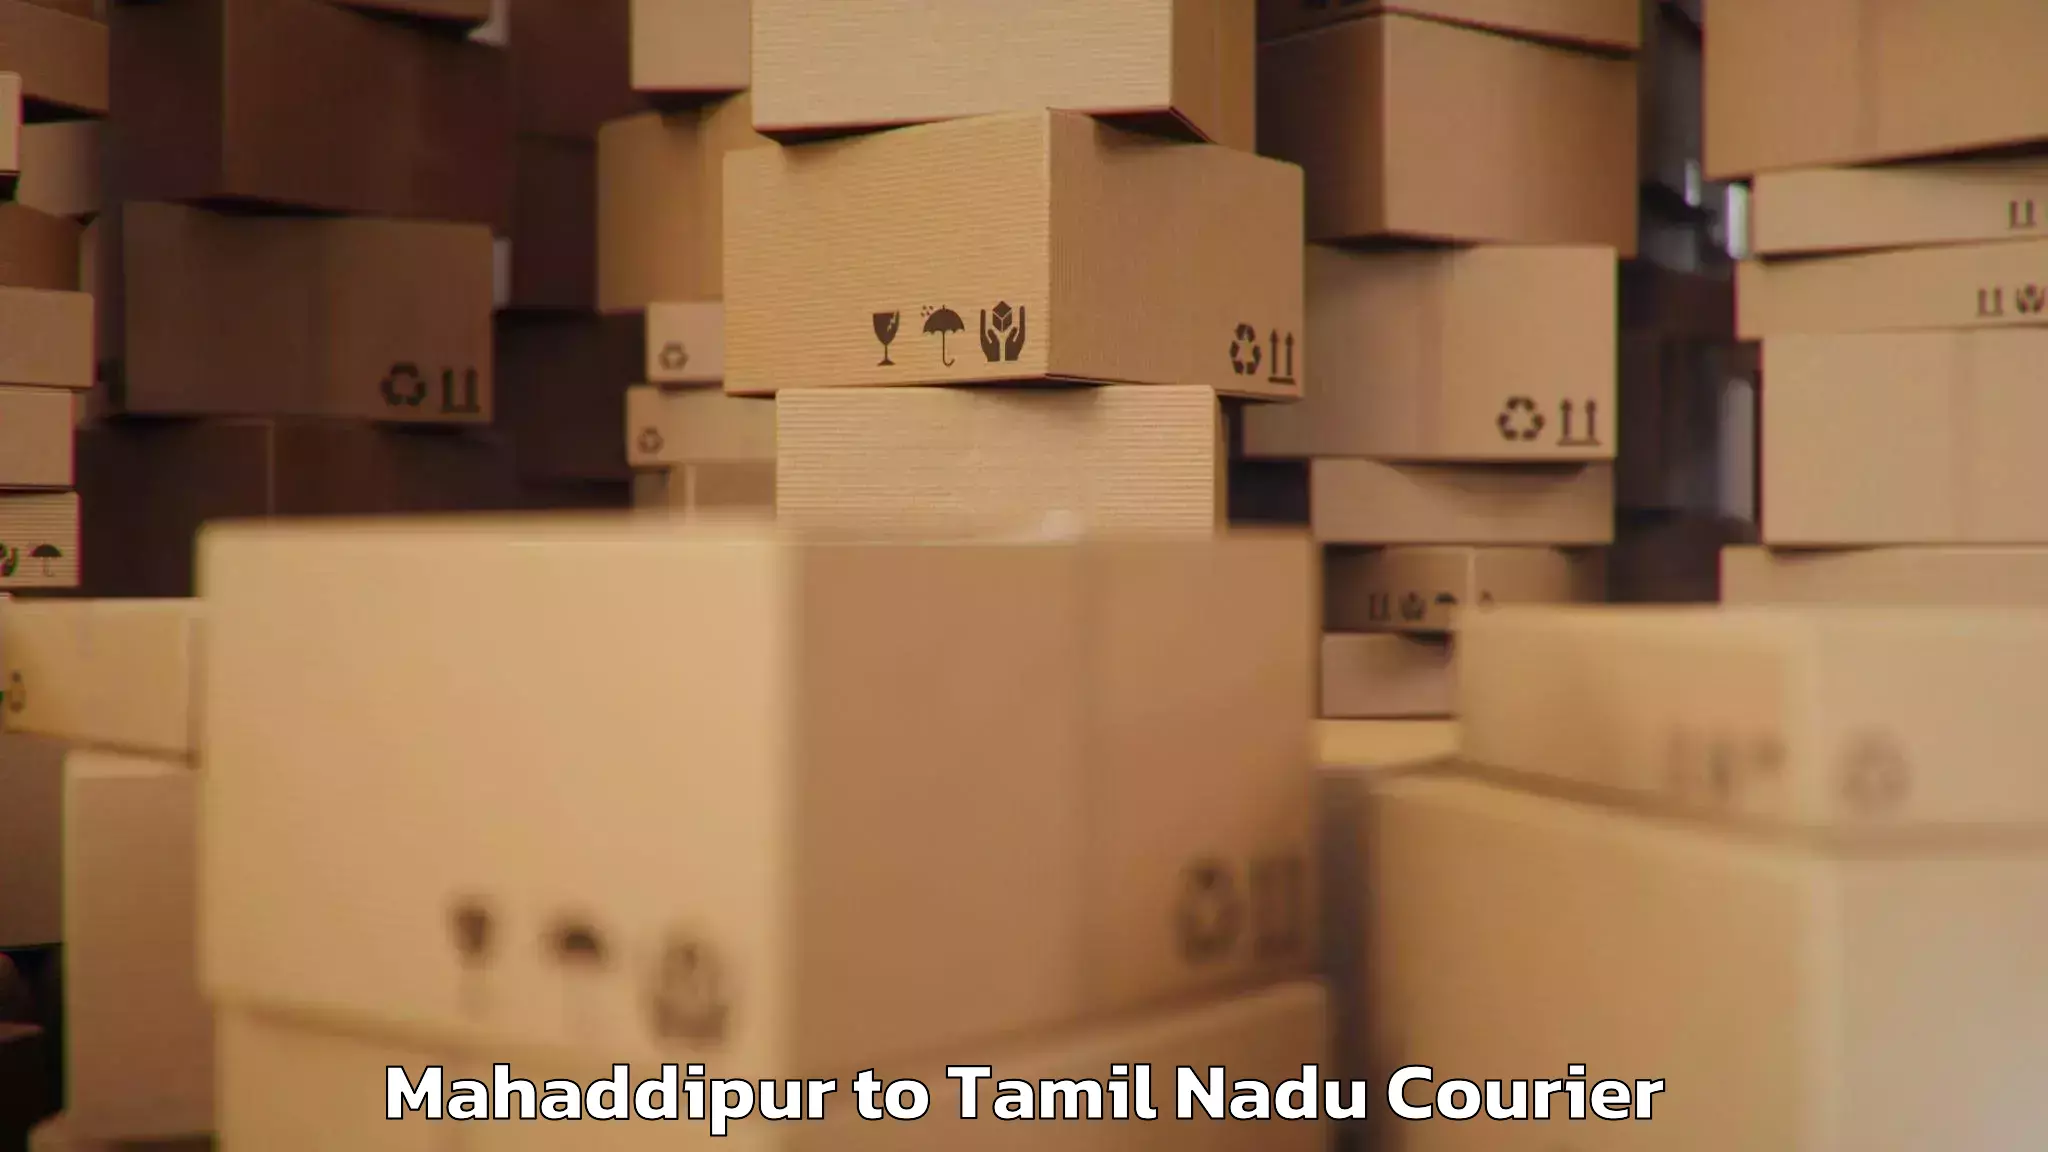 Baggage shipping quotes Mahaddipur to Chennai Port